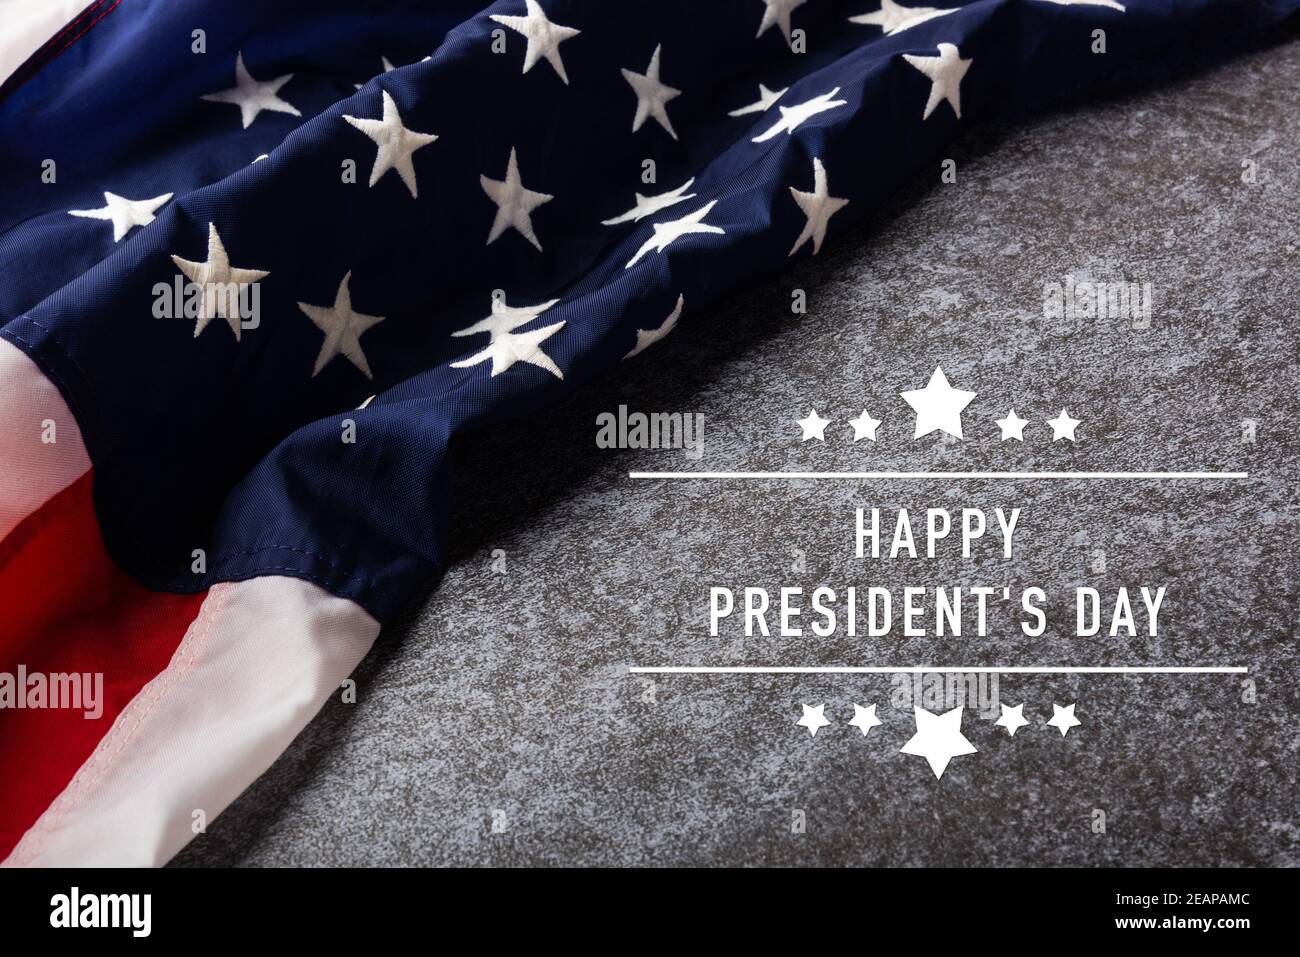 Drapeau américain ou américain avec texte « HAPPY PRESIDENT'S DAY » Banque D'Images